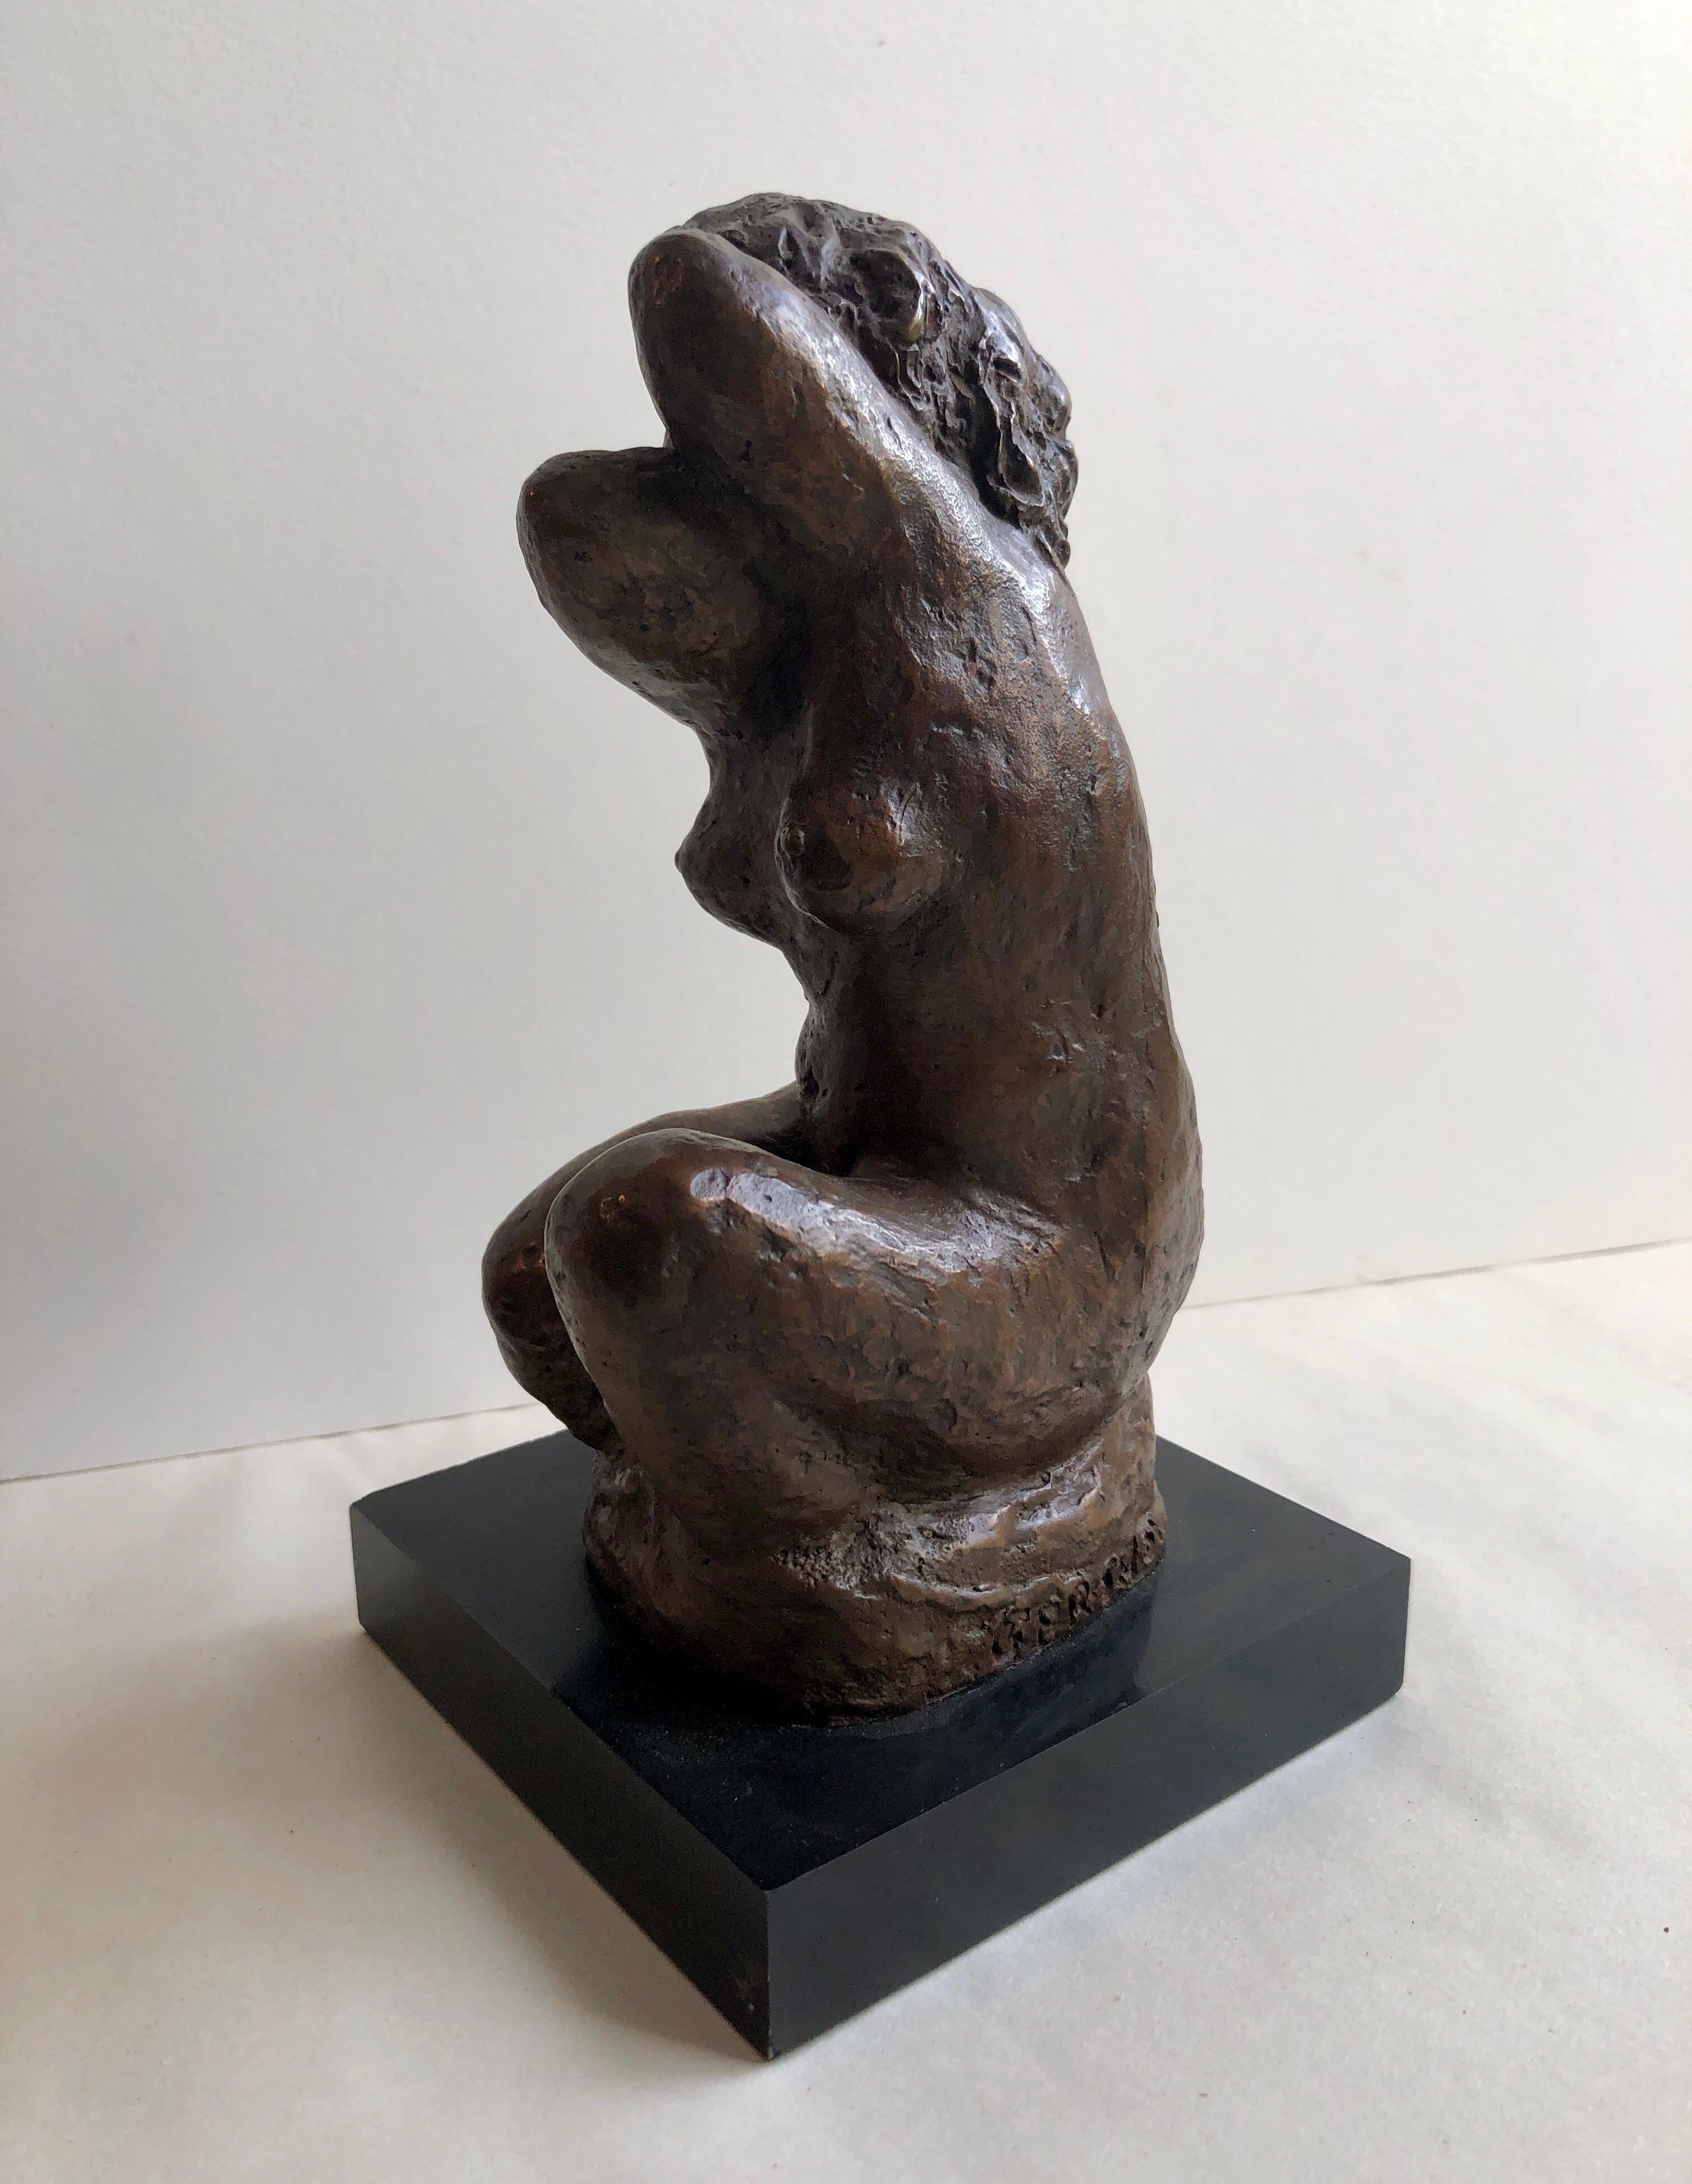 Sculpture de nu féminin en bronze moderniste, WPA, artiste de l'hôtel Chelsea de New York - Or Nude Sculpture par Eugenie Gershoy